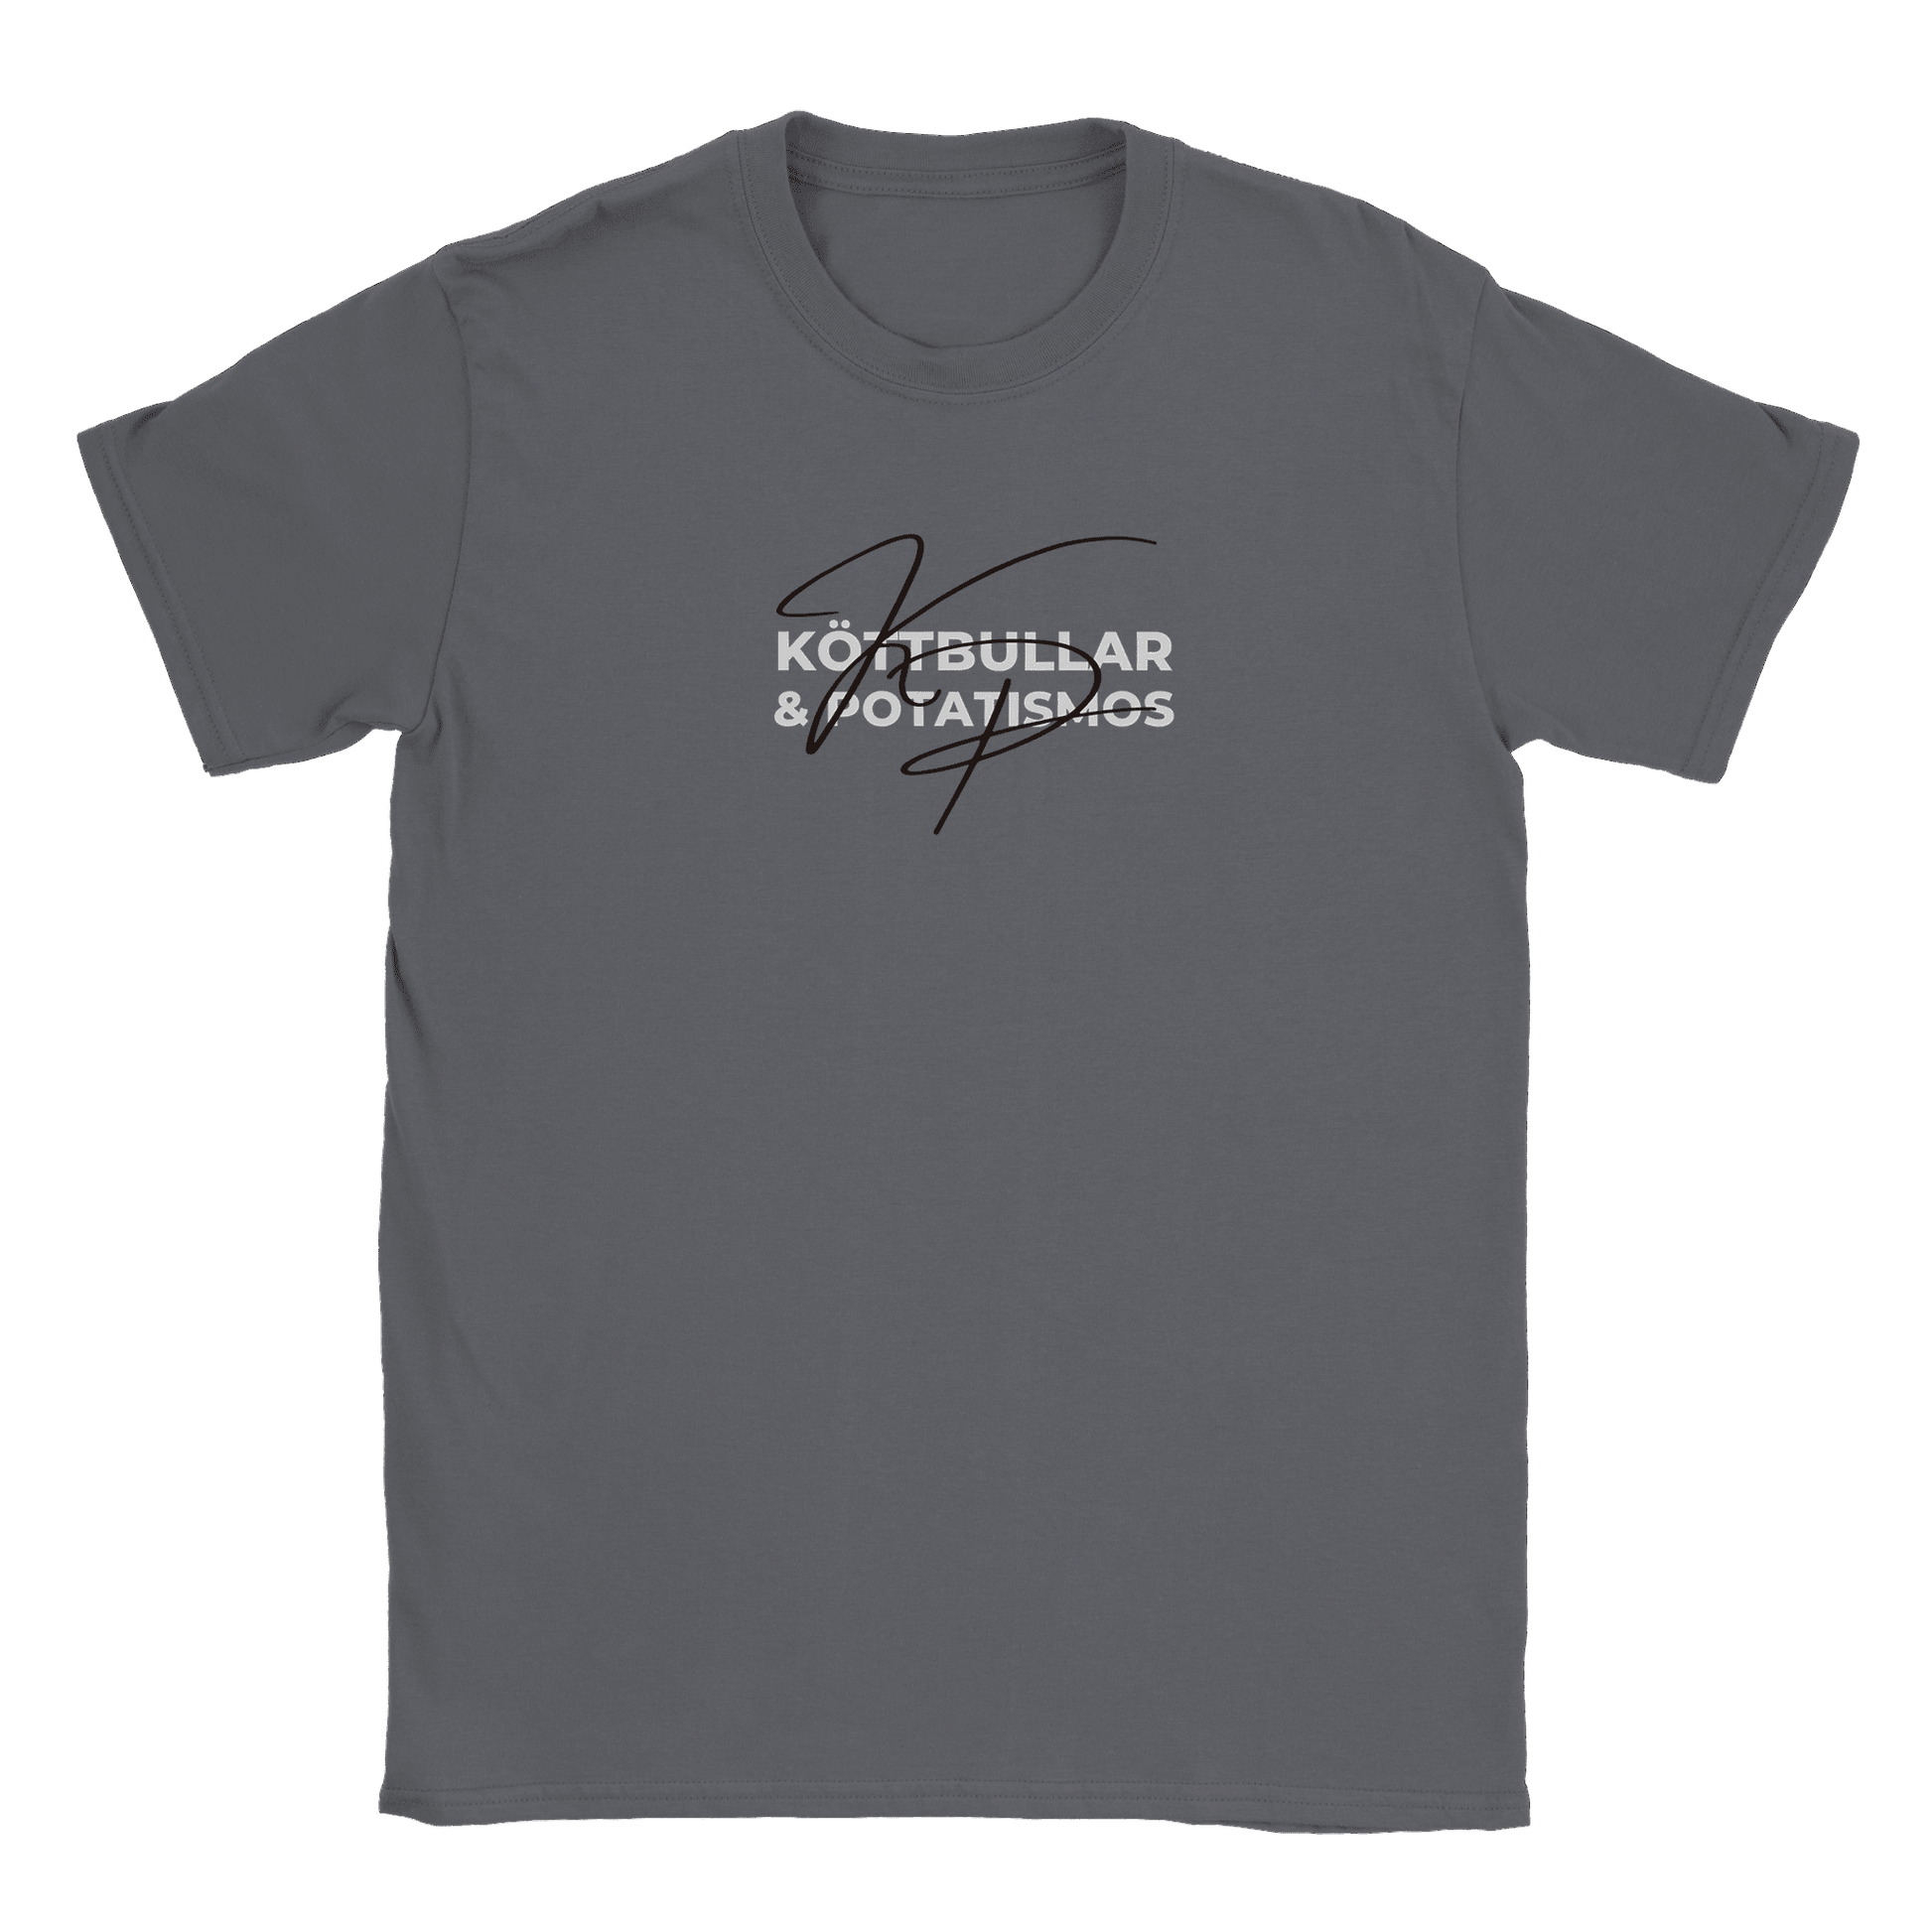 Köttbullar och potatismos - T-shirt Charcoal